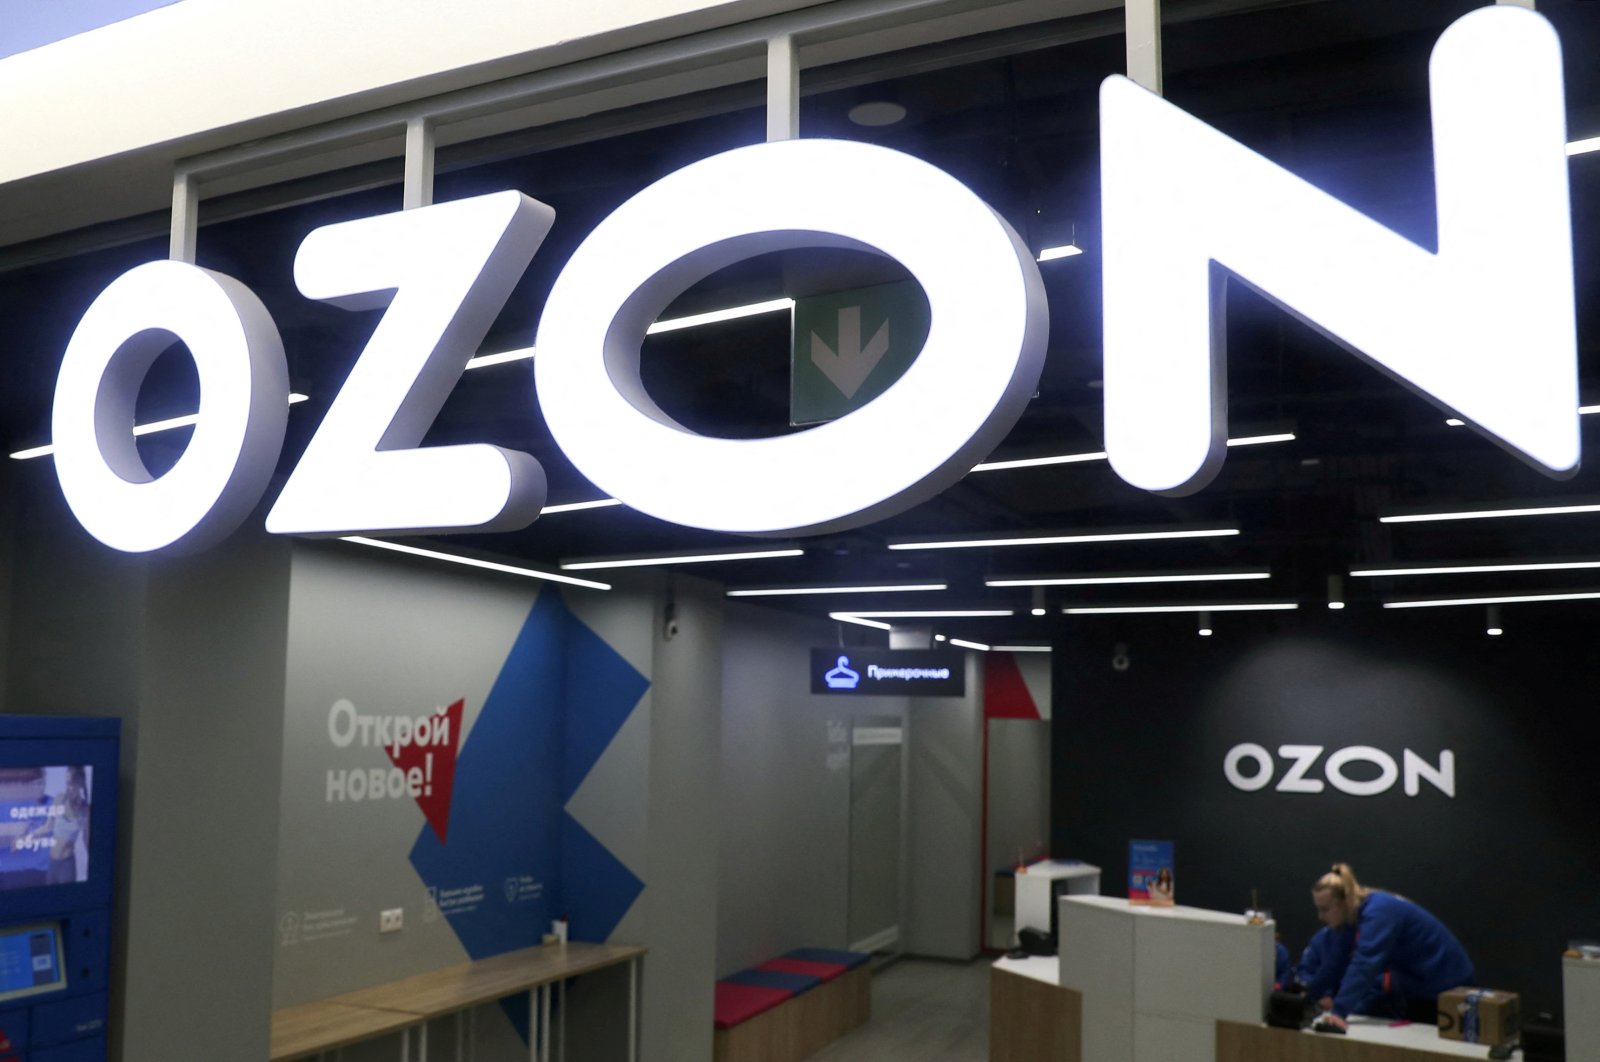 Raksasa e-commerce Rusia Ozon membuka kantor di Türkiye